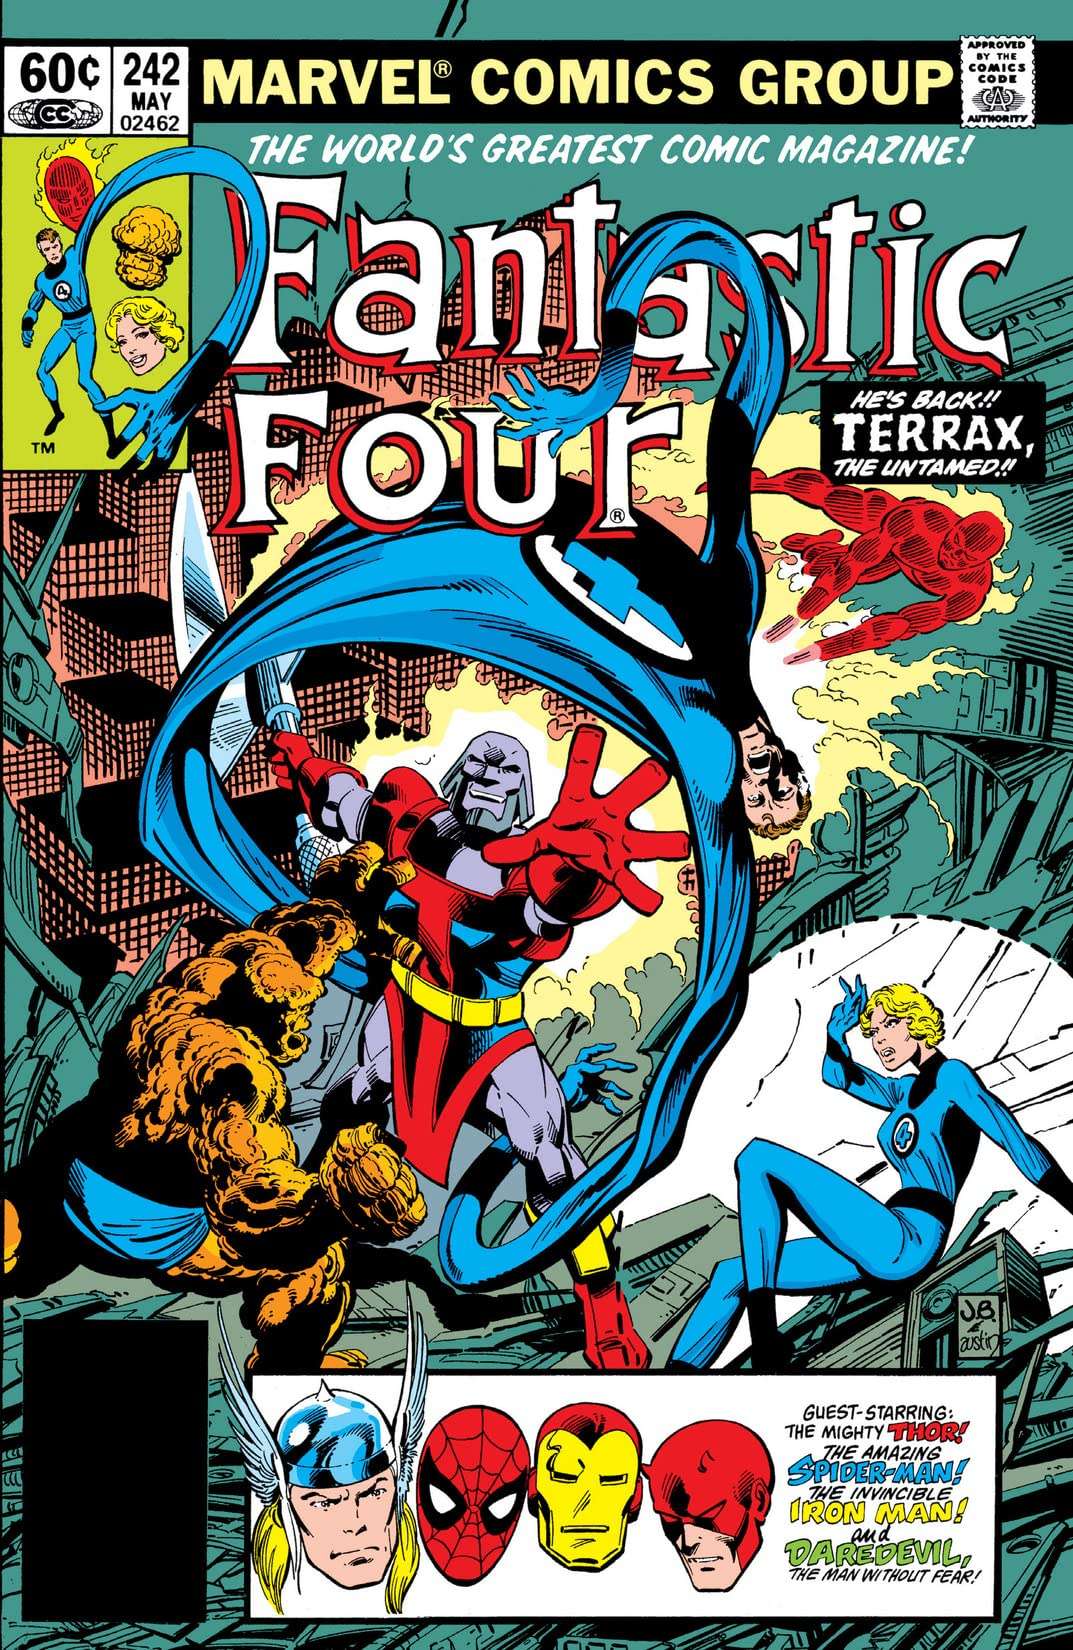 John Byrne's legendary Fantastic Four run